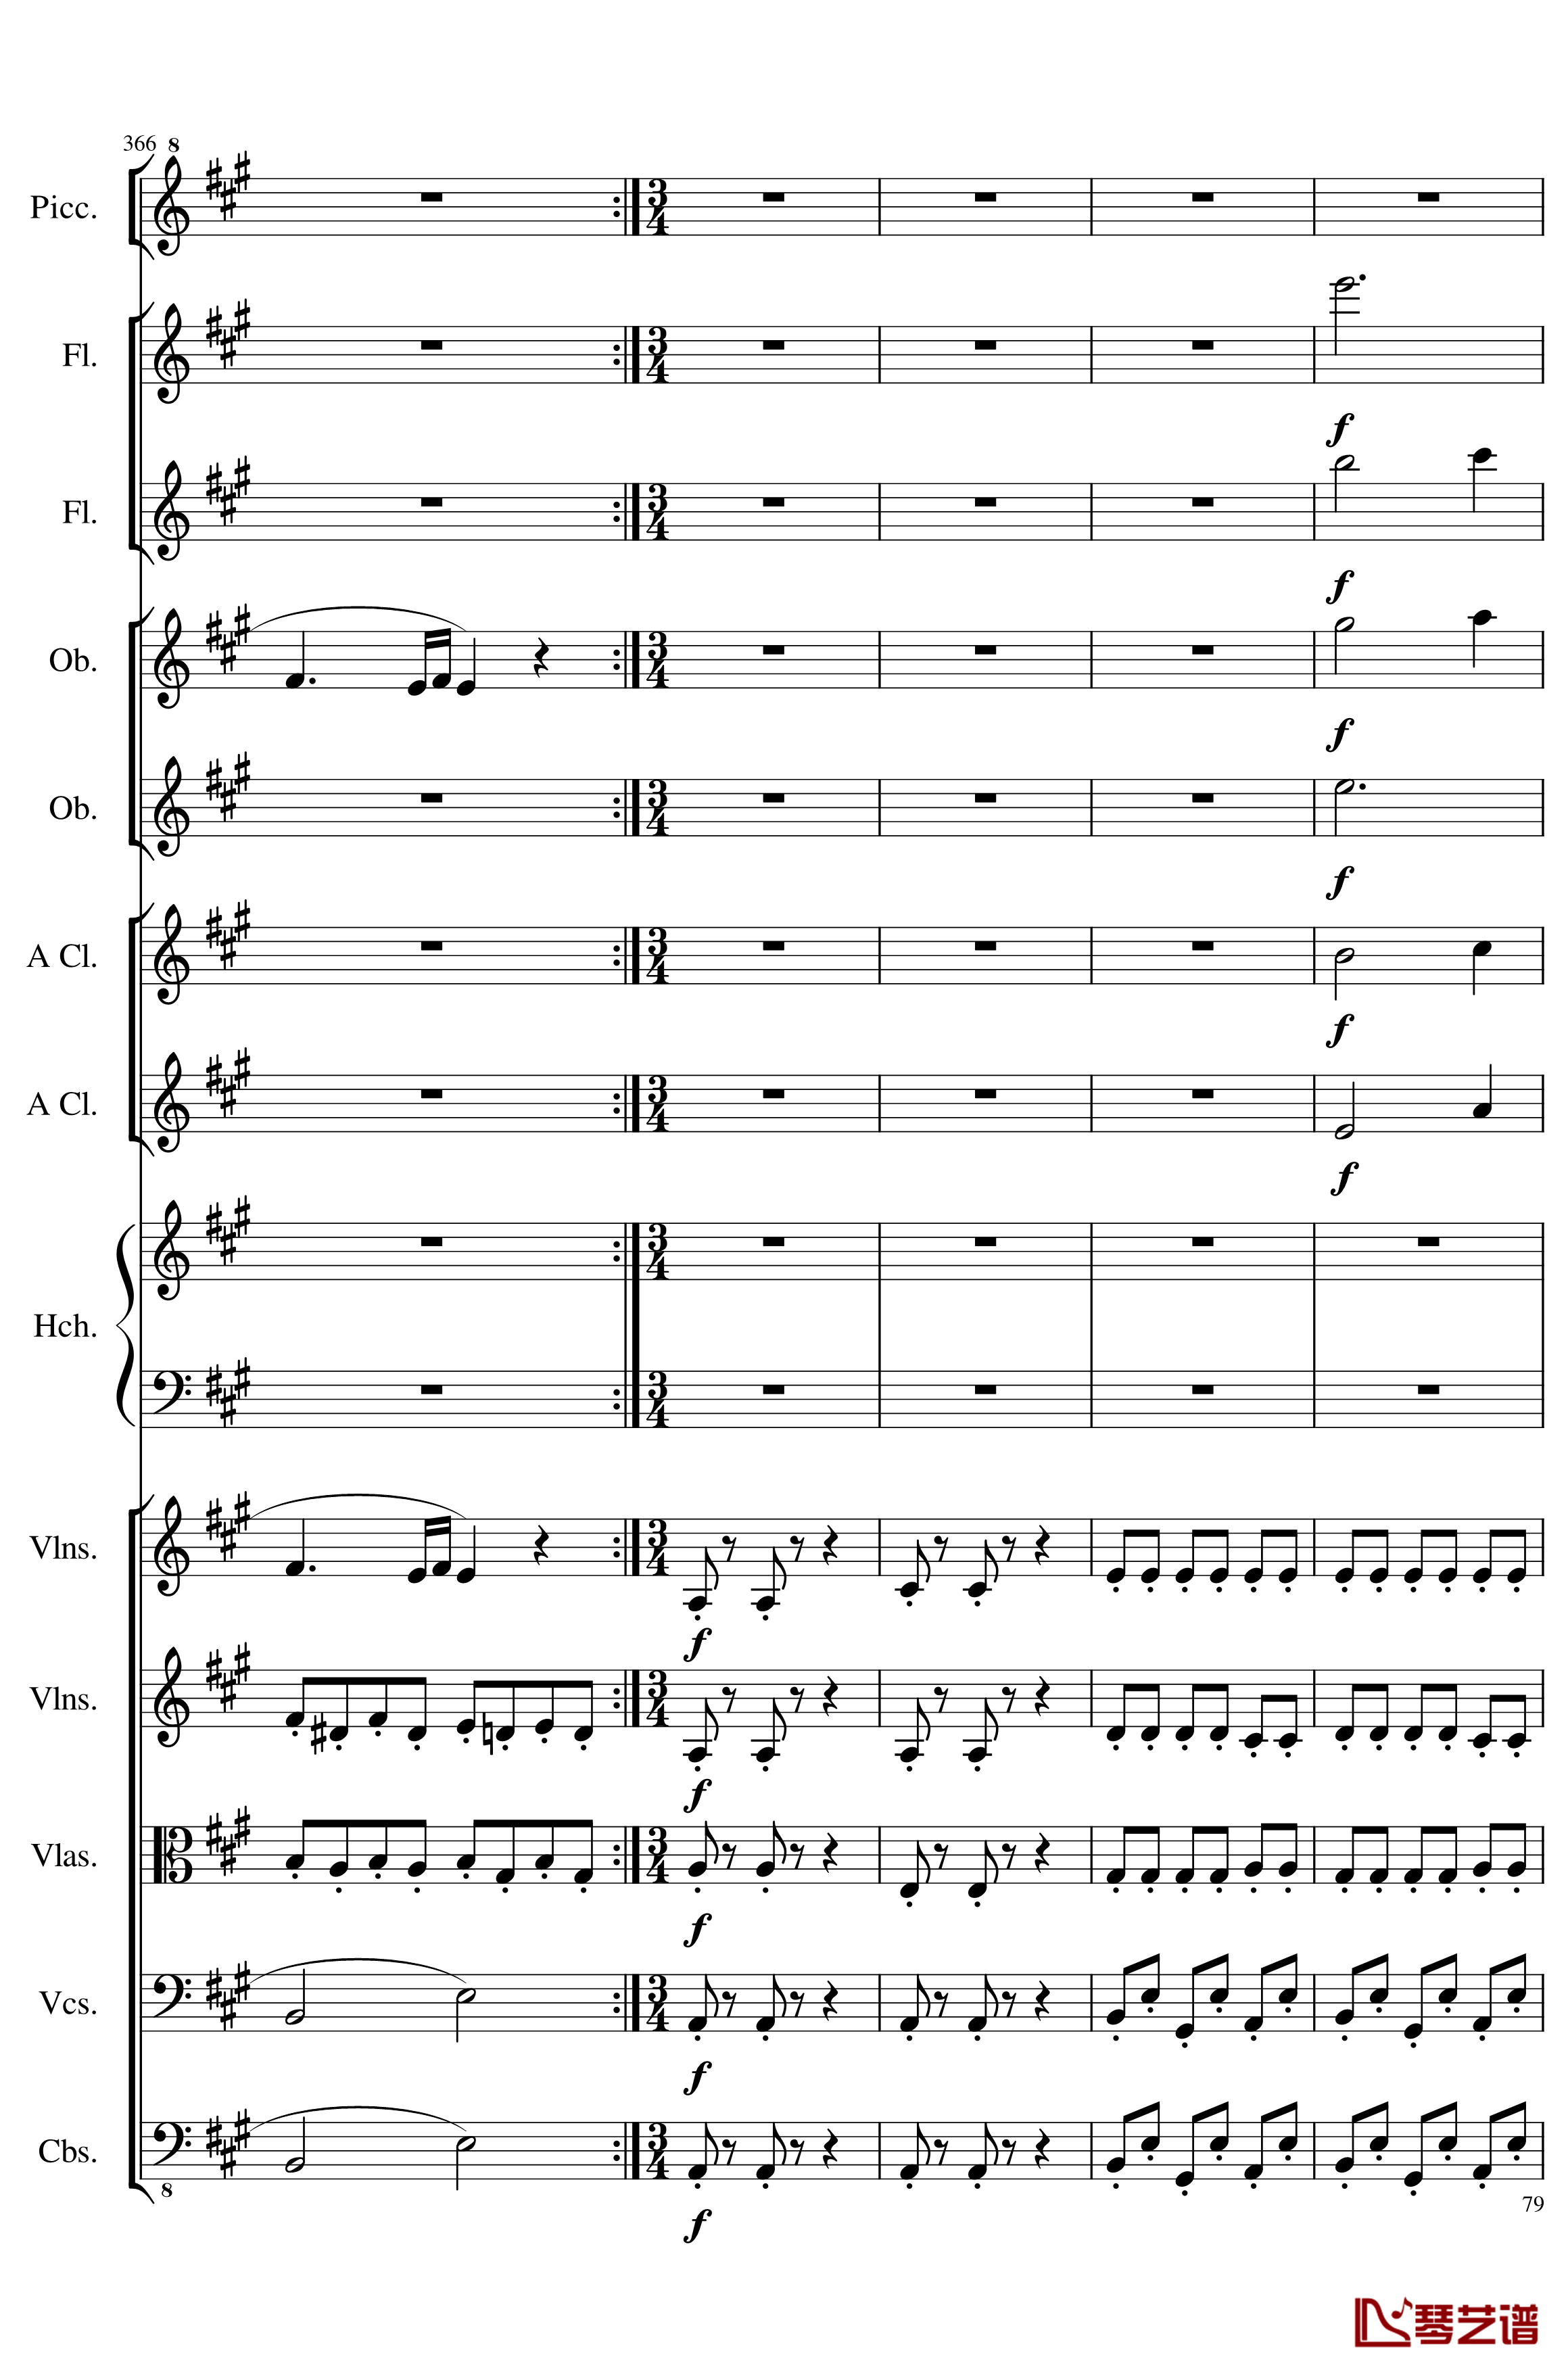 7 Contredanses No.1-7, Op.124钢琴谱-7首乡村舞曲，第一至第七，作品124-一个球79